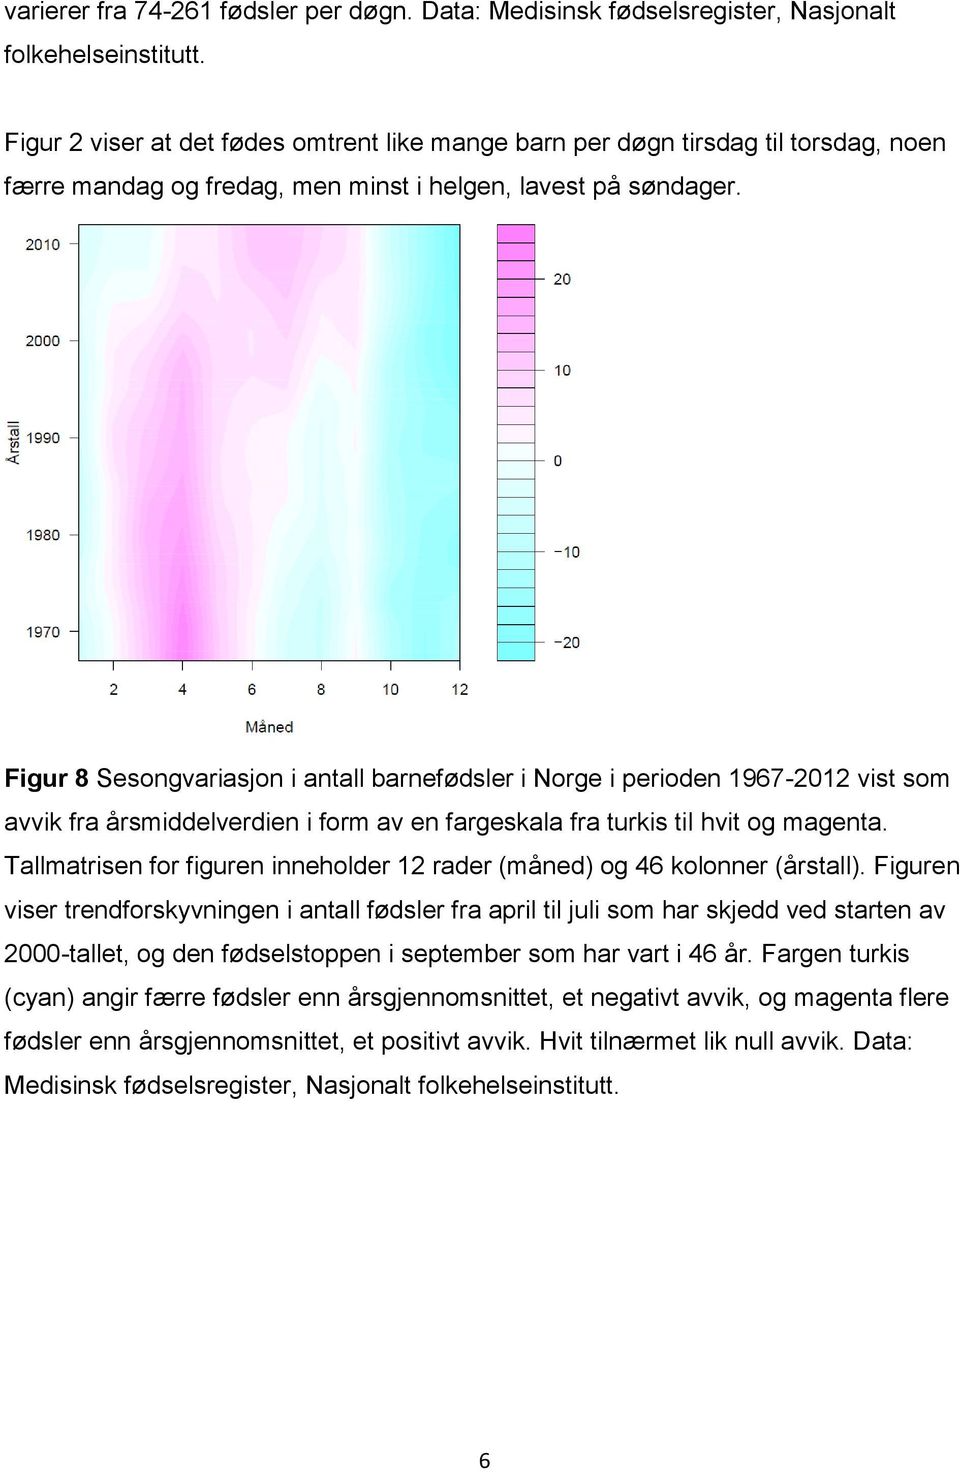 Figur 8 Sesongvariasjon i antall barnefødsler i Norge i perioden 1967-2012 vist som avvik fra årsmiddelverdien i form av en fargeskala fra turkis til hvit og magenta.